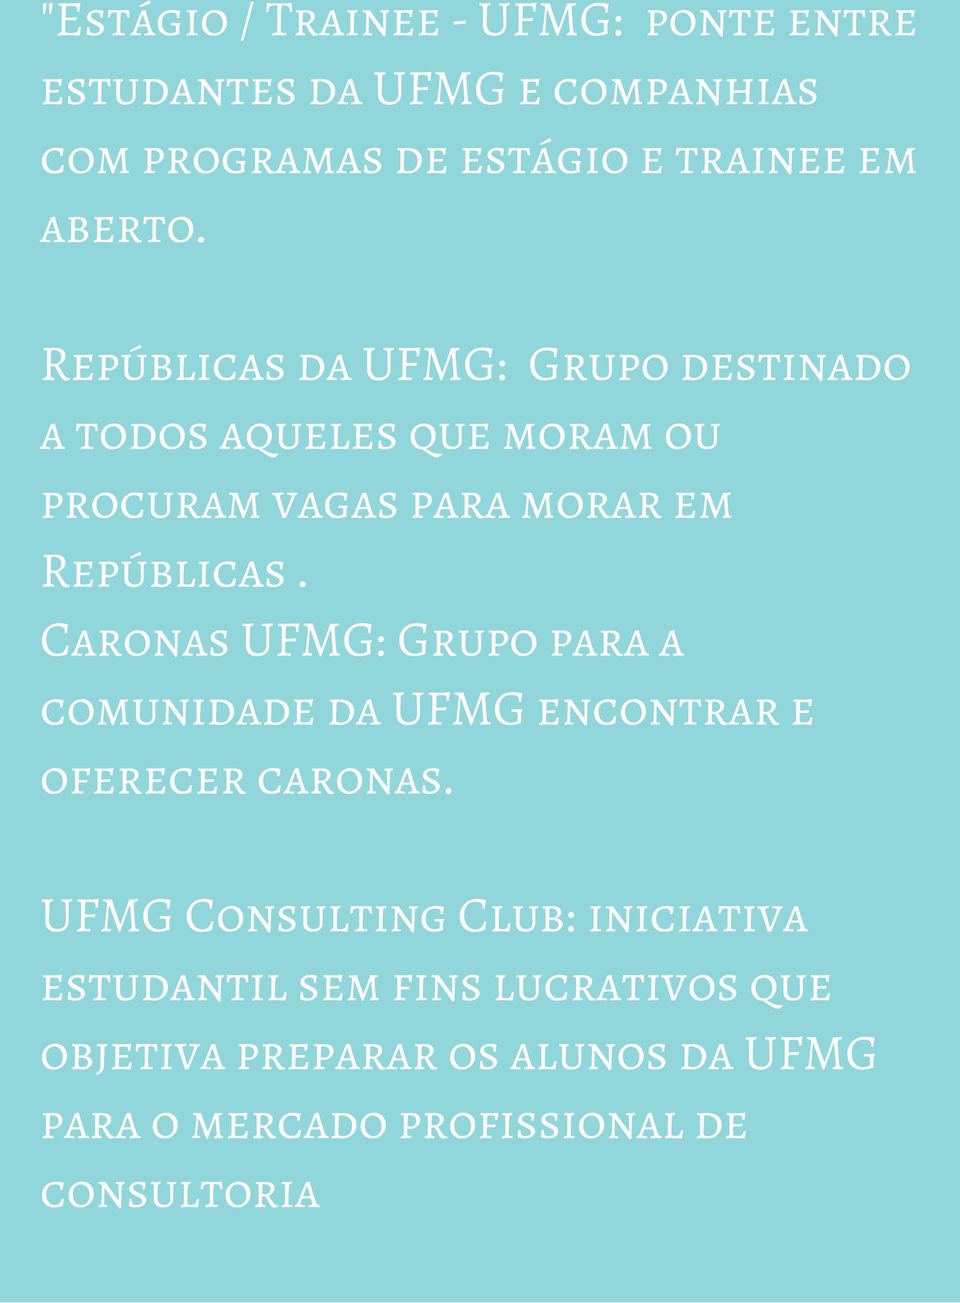 Repúblicas da UFMG: Grupo destinado a todos aqueles que moram ou procuram vagas para morar em Repúblicas.